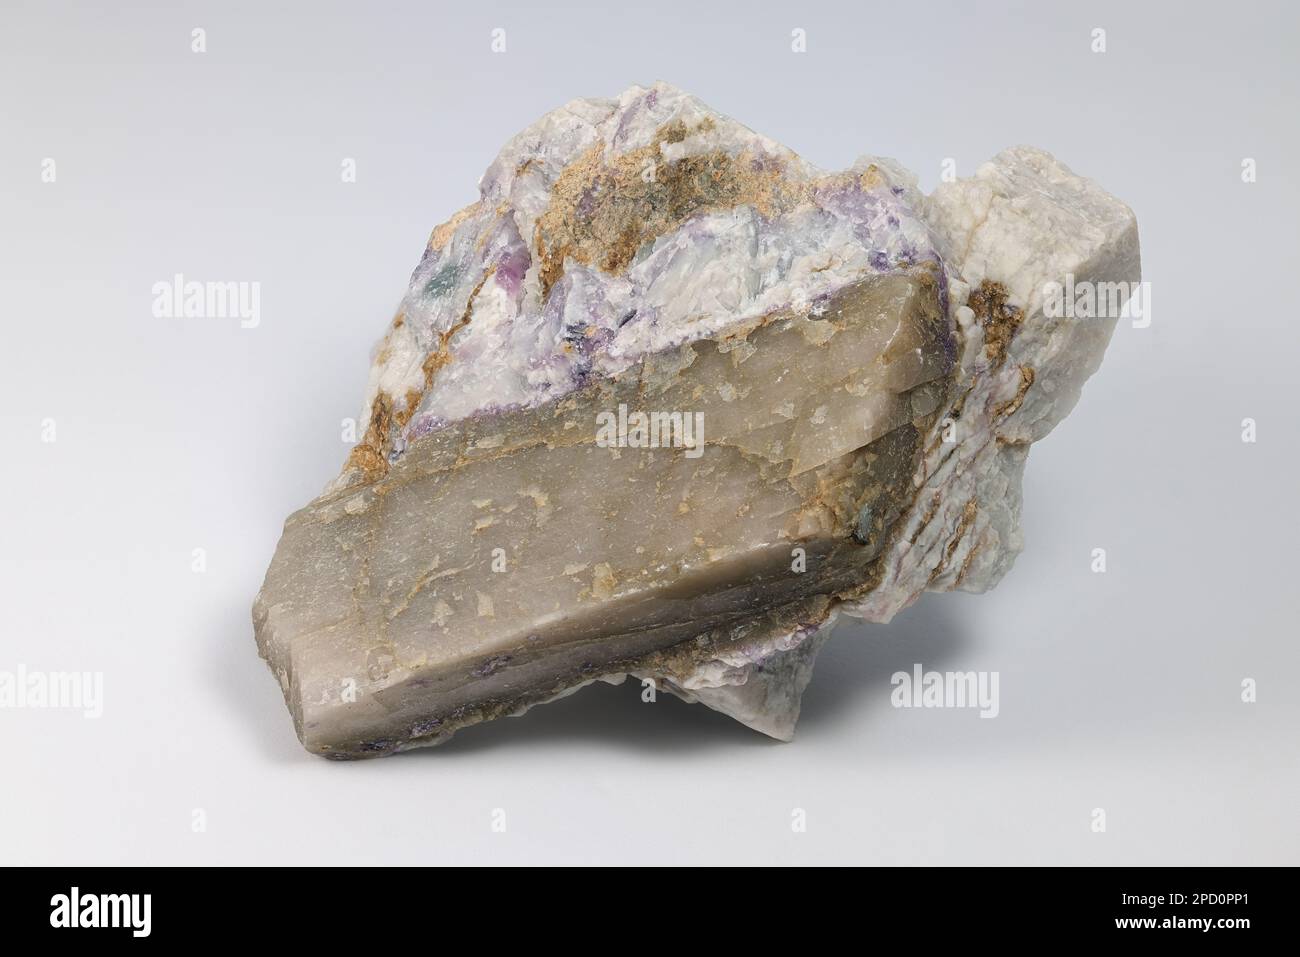 Kristall des großen industriellen Lithium-Erz-Spodumens in Albitmatrix aus dem Haapaluoma-Lithium-Steinbruch in Finnland. Stockfoto